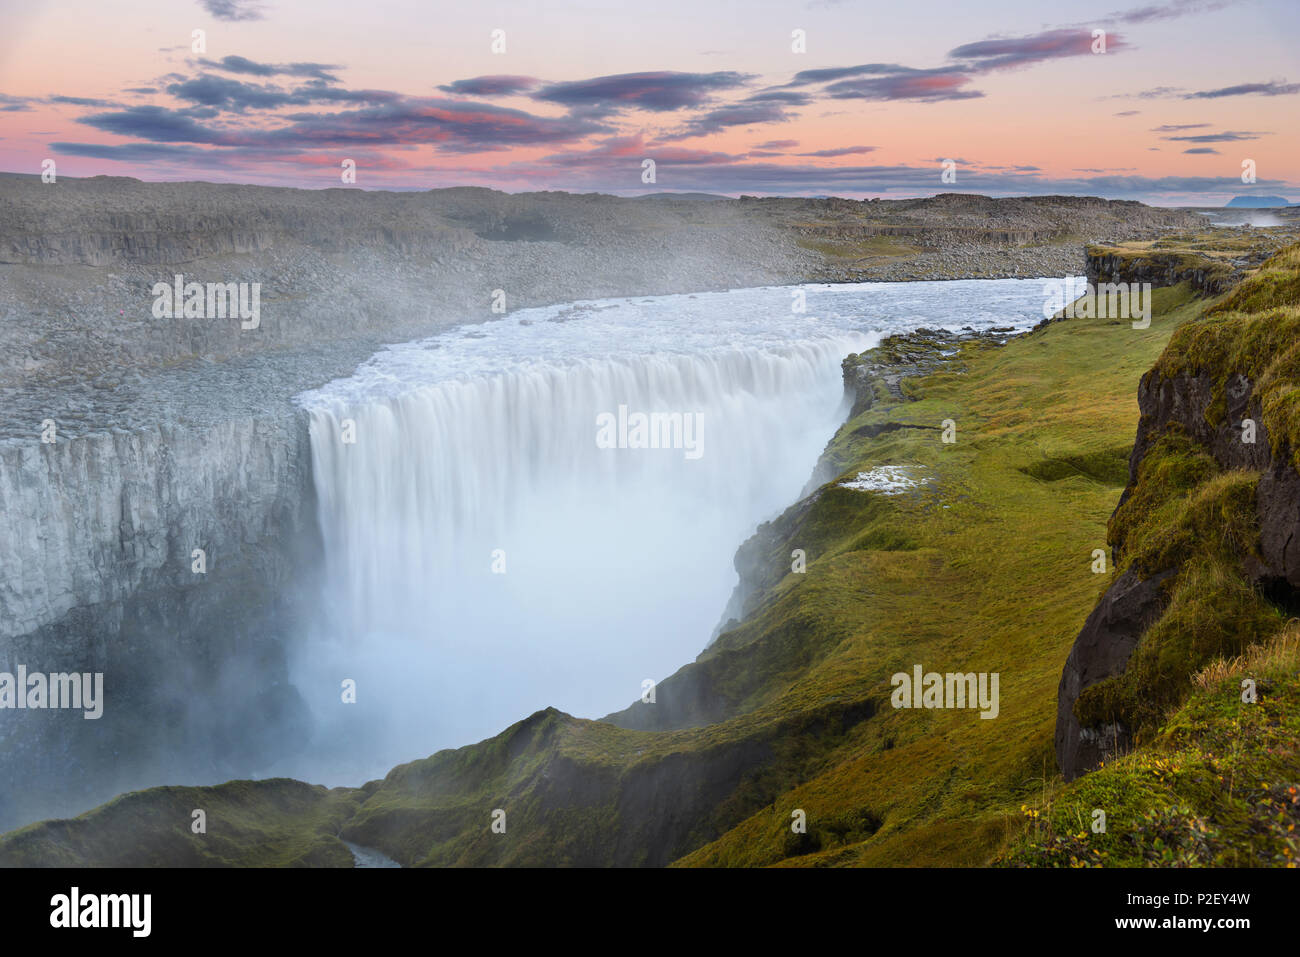 Большой водопад в европе. Исландский водопад Деттифосс. Деттифосс Исландия. Водопад Деттифосс (Dettifoss),. Водопад Деттифосс в Северной Исландии.